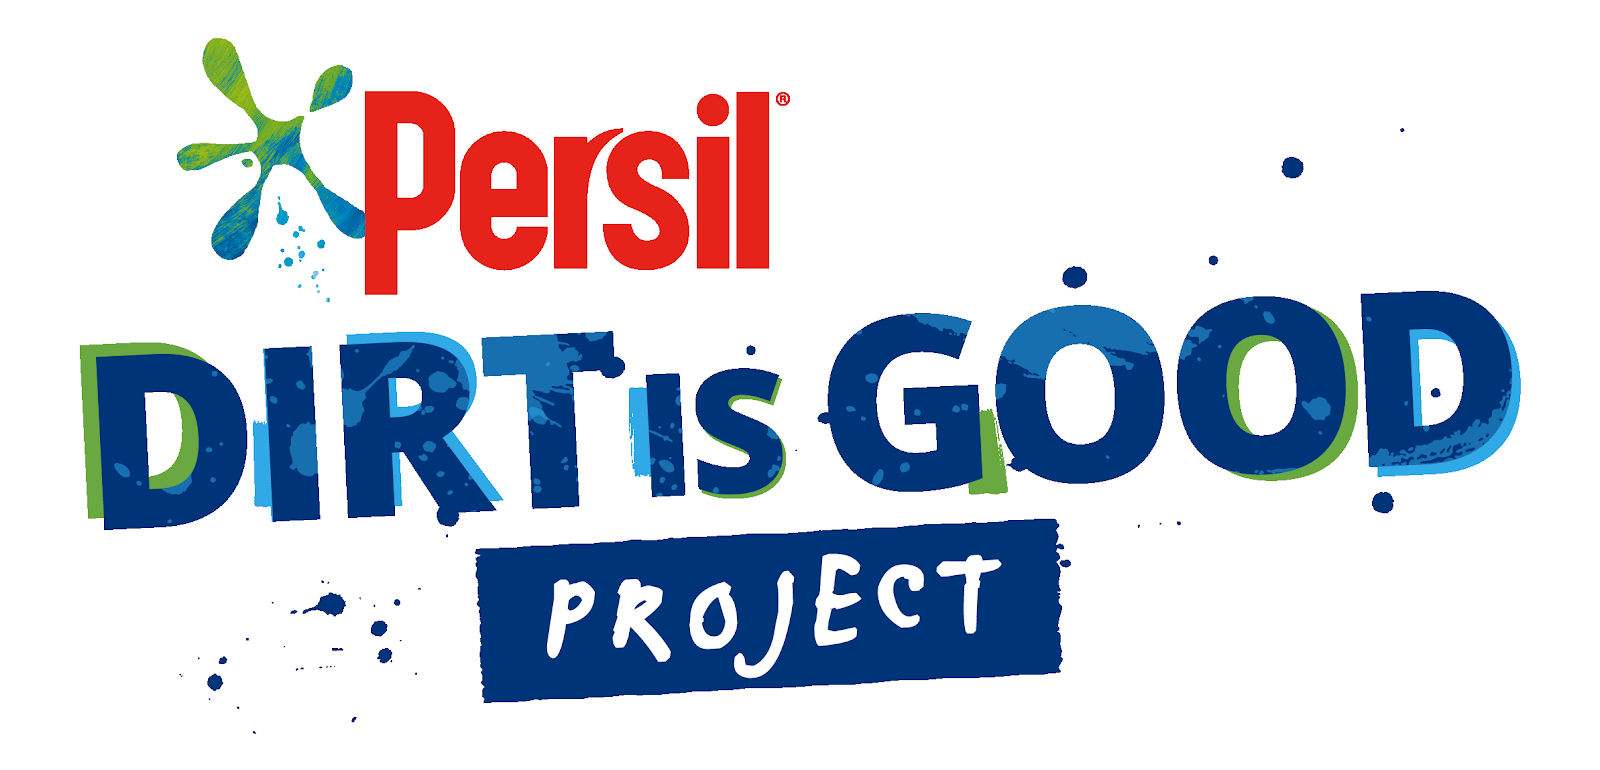 Persil, Dirt Is Good